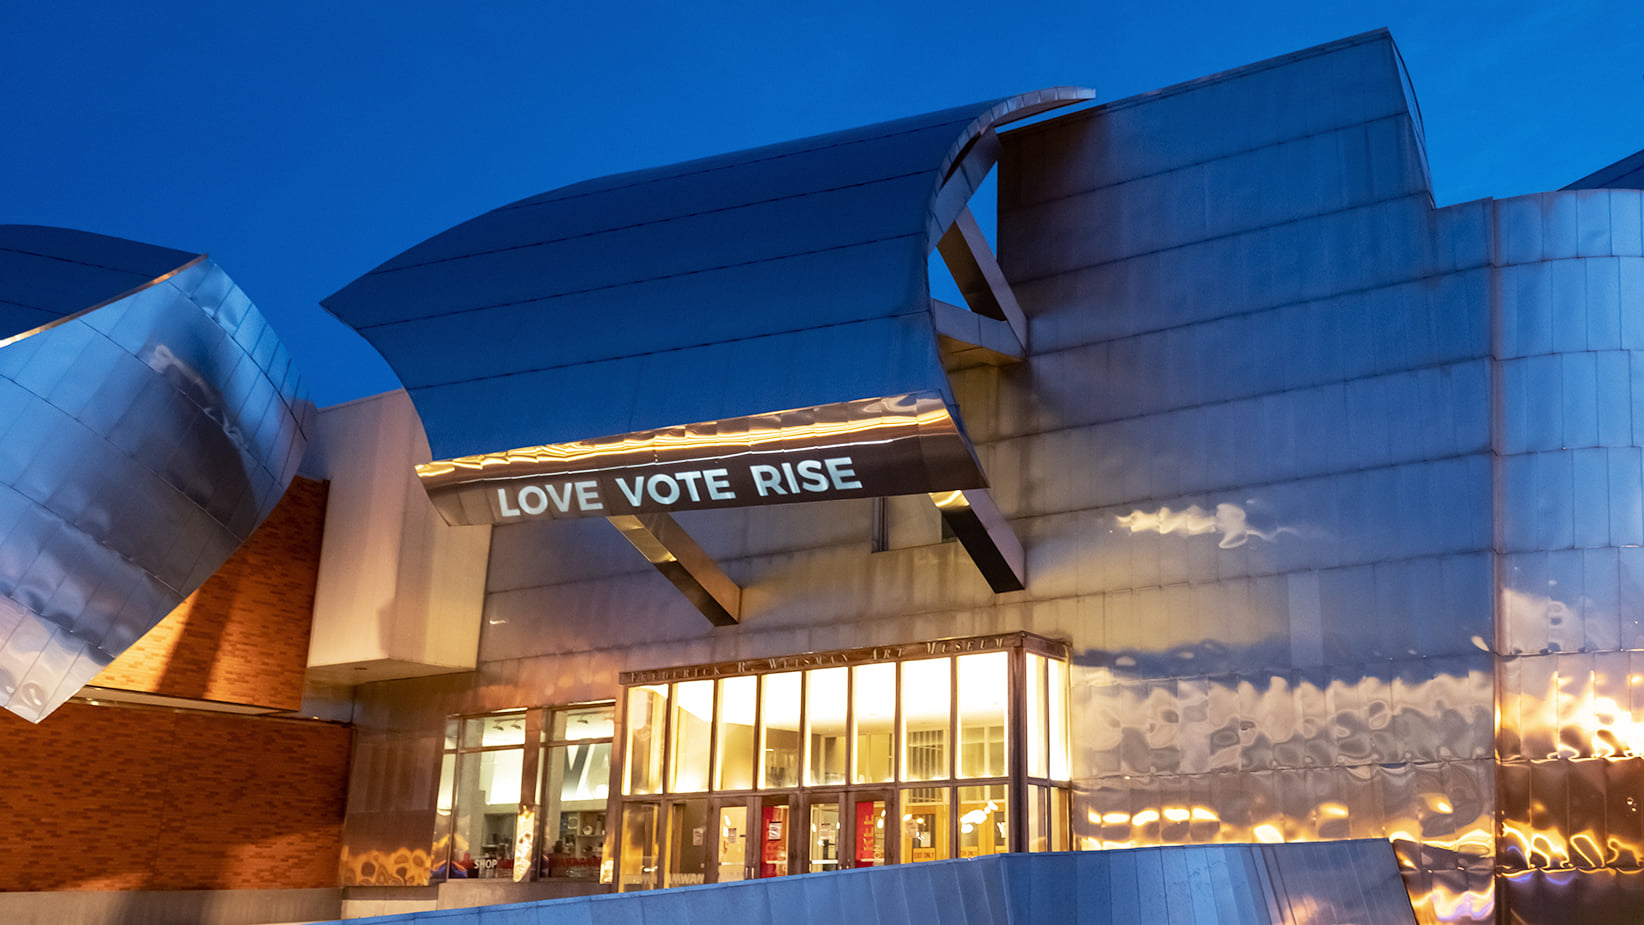 Love Vote Rise